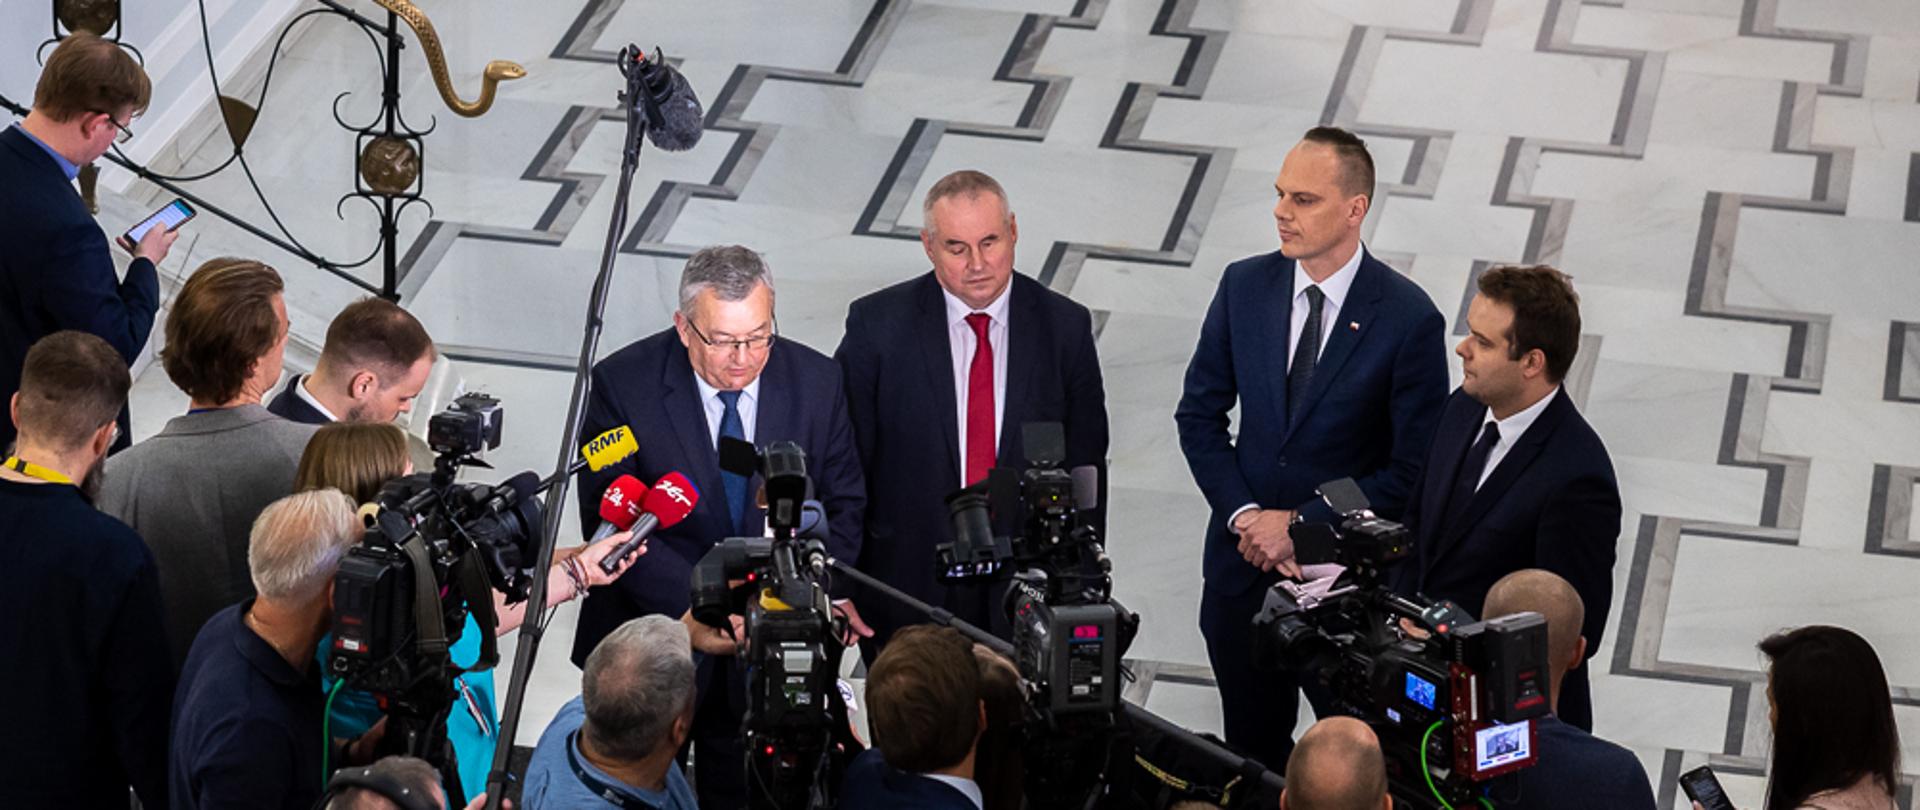 Minister infrastruktury Andrzej Adamczyk oraz wiceminister Rafał Weber w trakcie konferencji prasowej w sejmie po przegłosowaniu ustawy o bezpłatnych autostradach i drogach ekspresowych